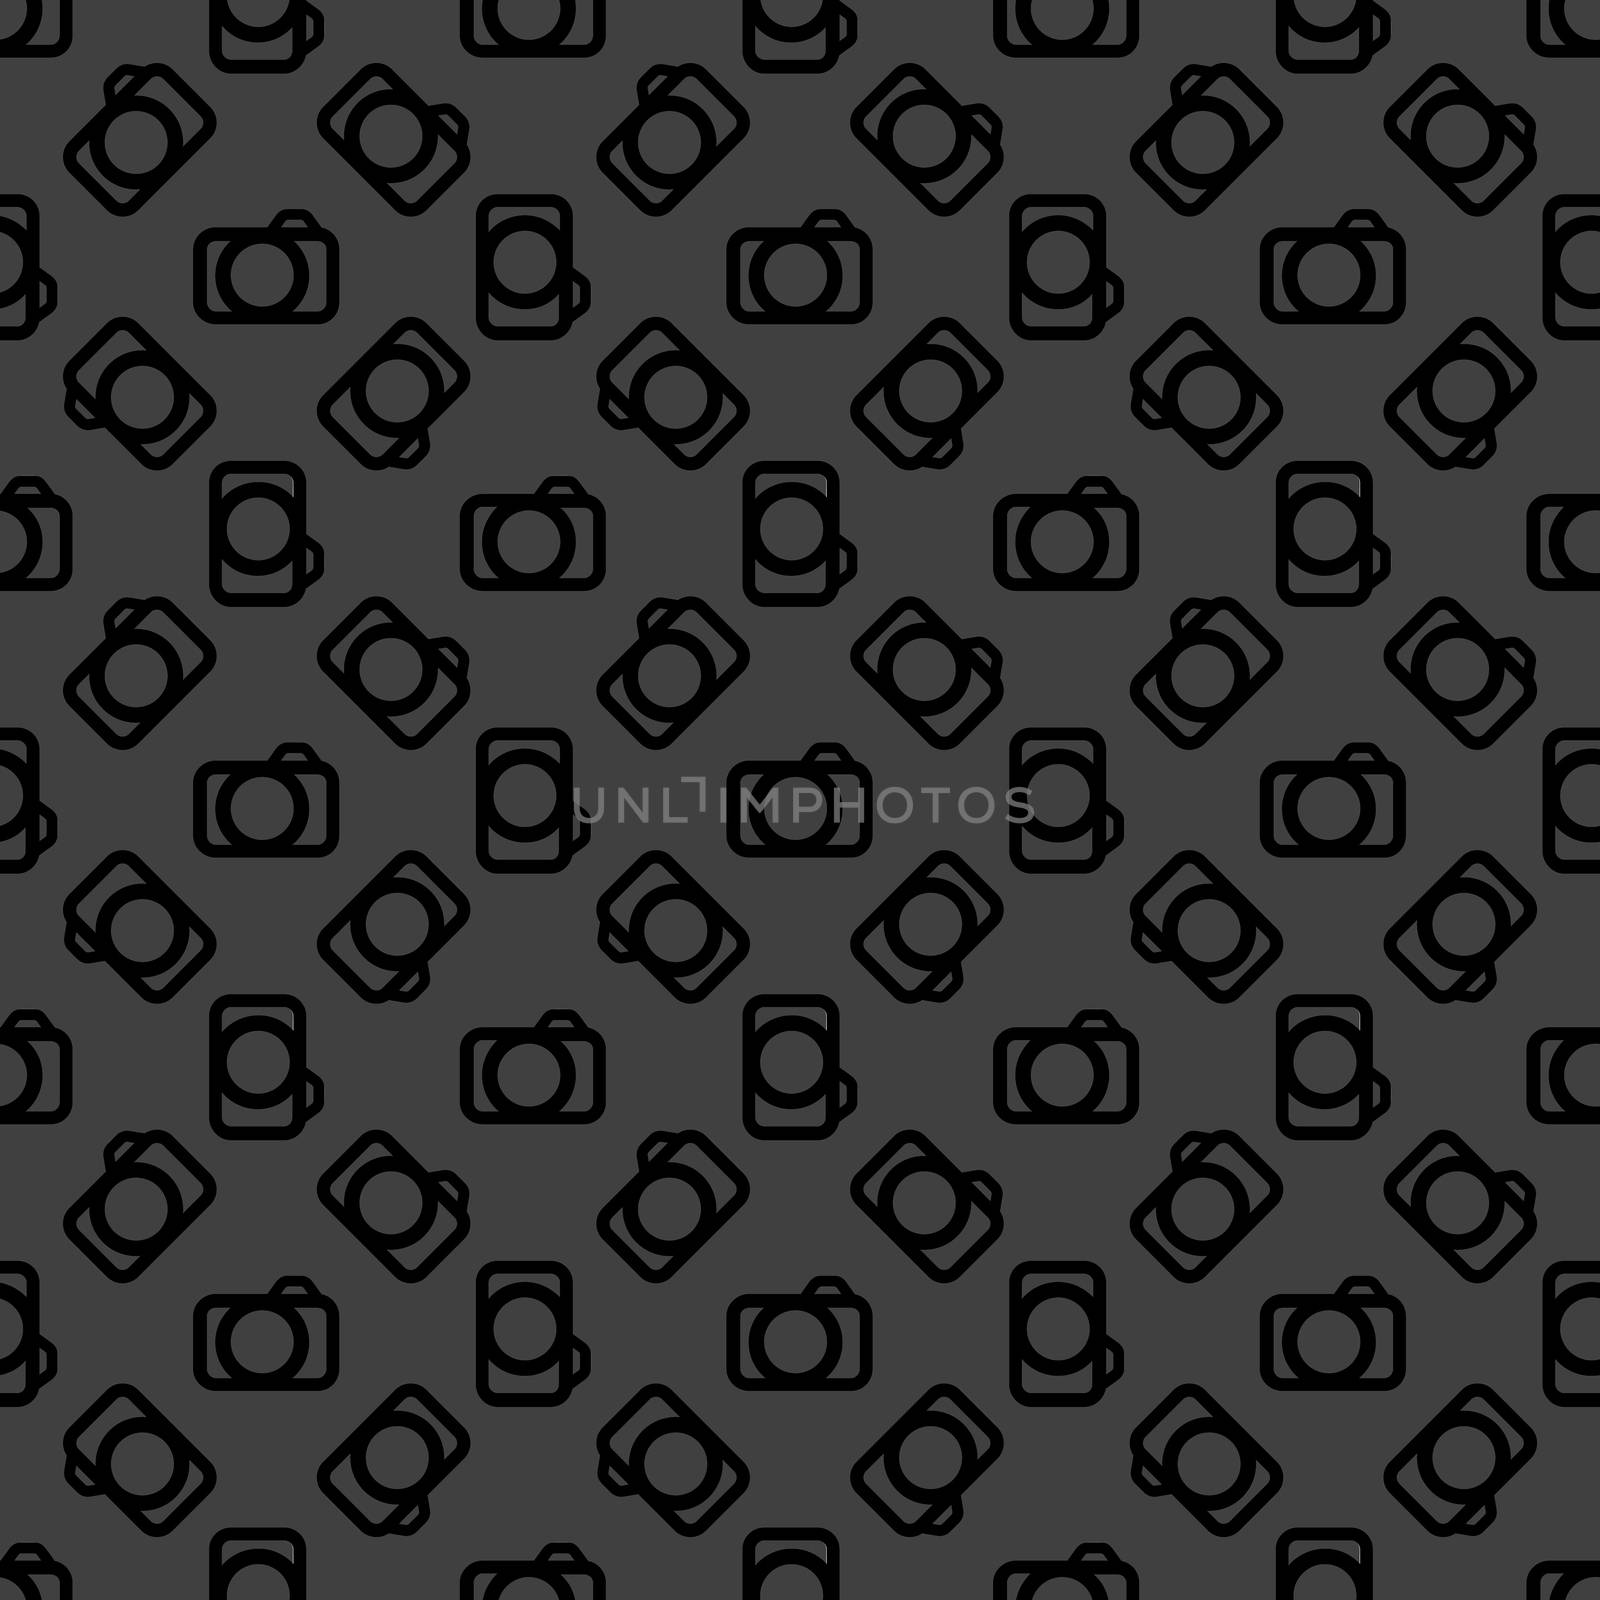 Camera web icon. flat design. Seamless pattern. by serhii_lohvyniuk